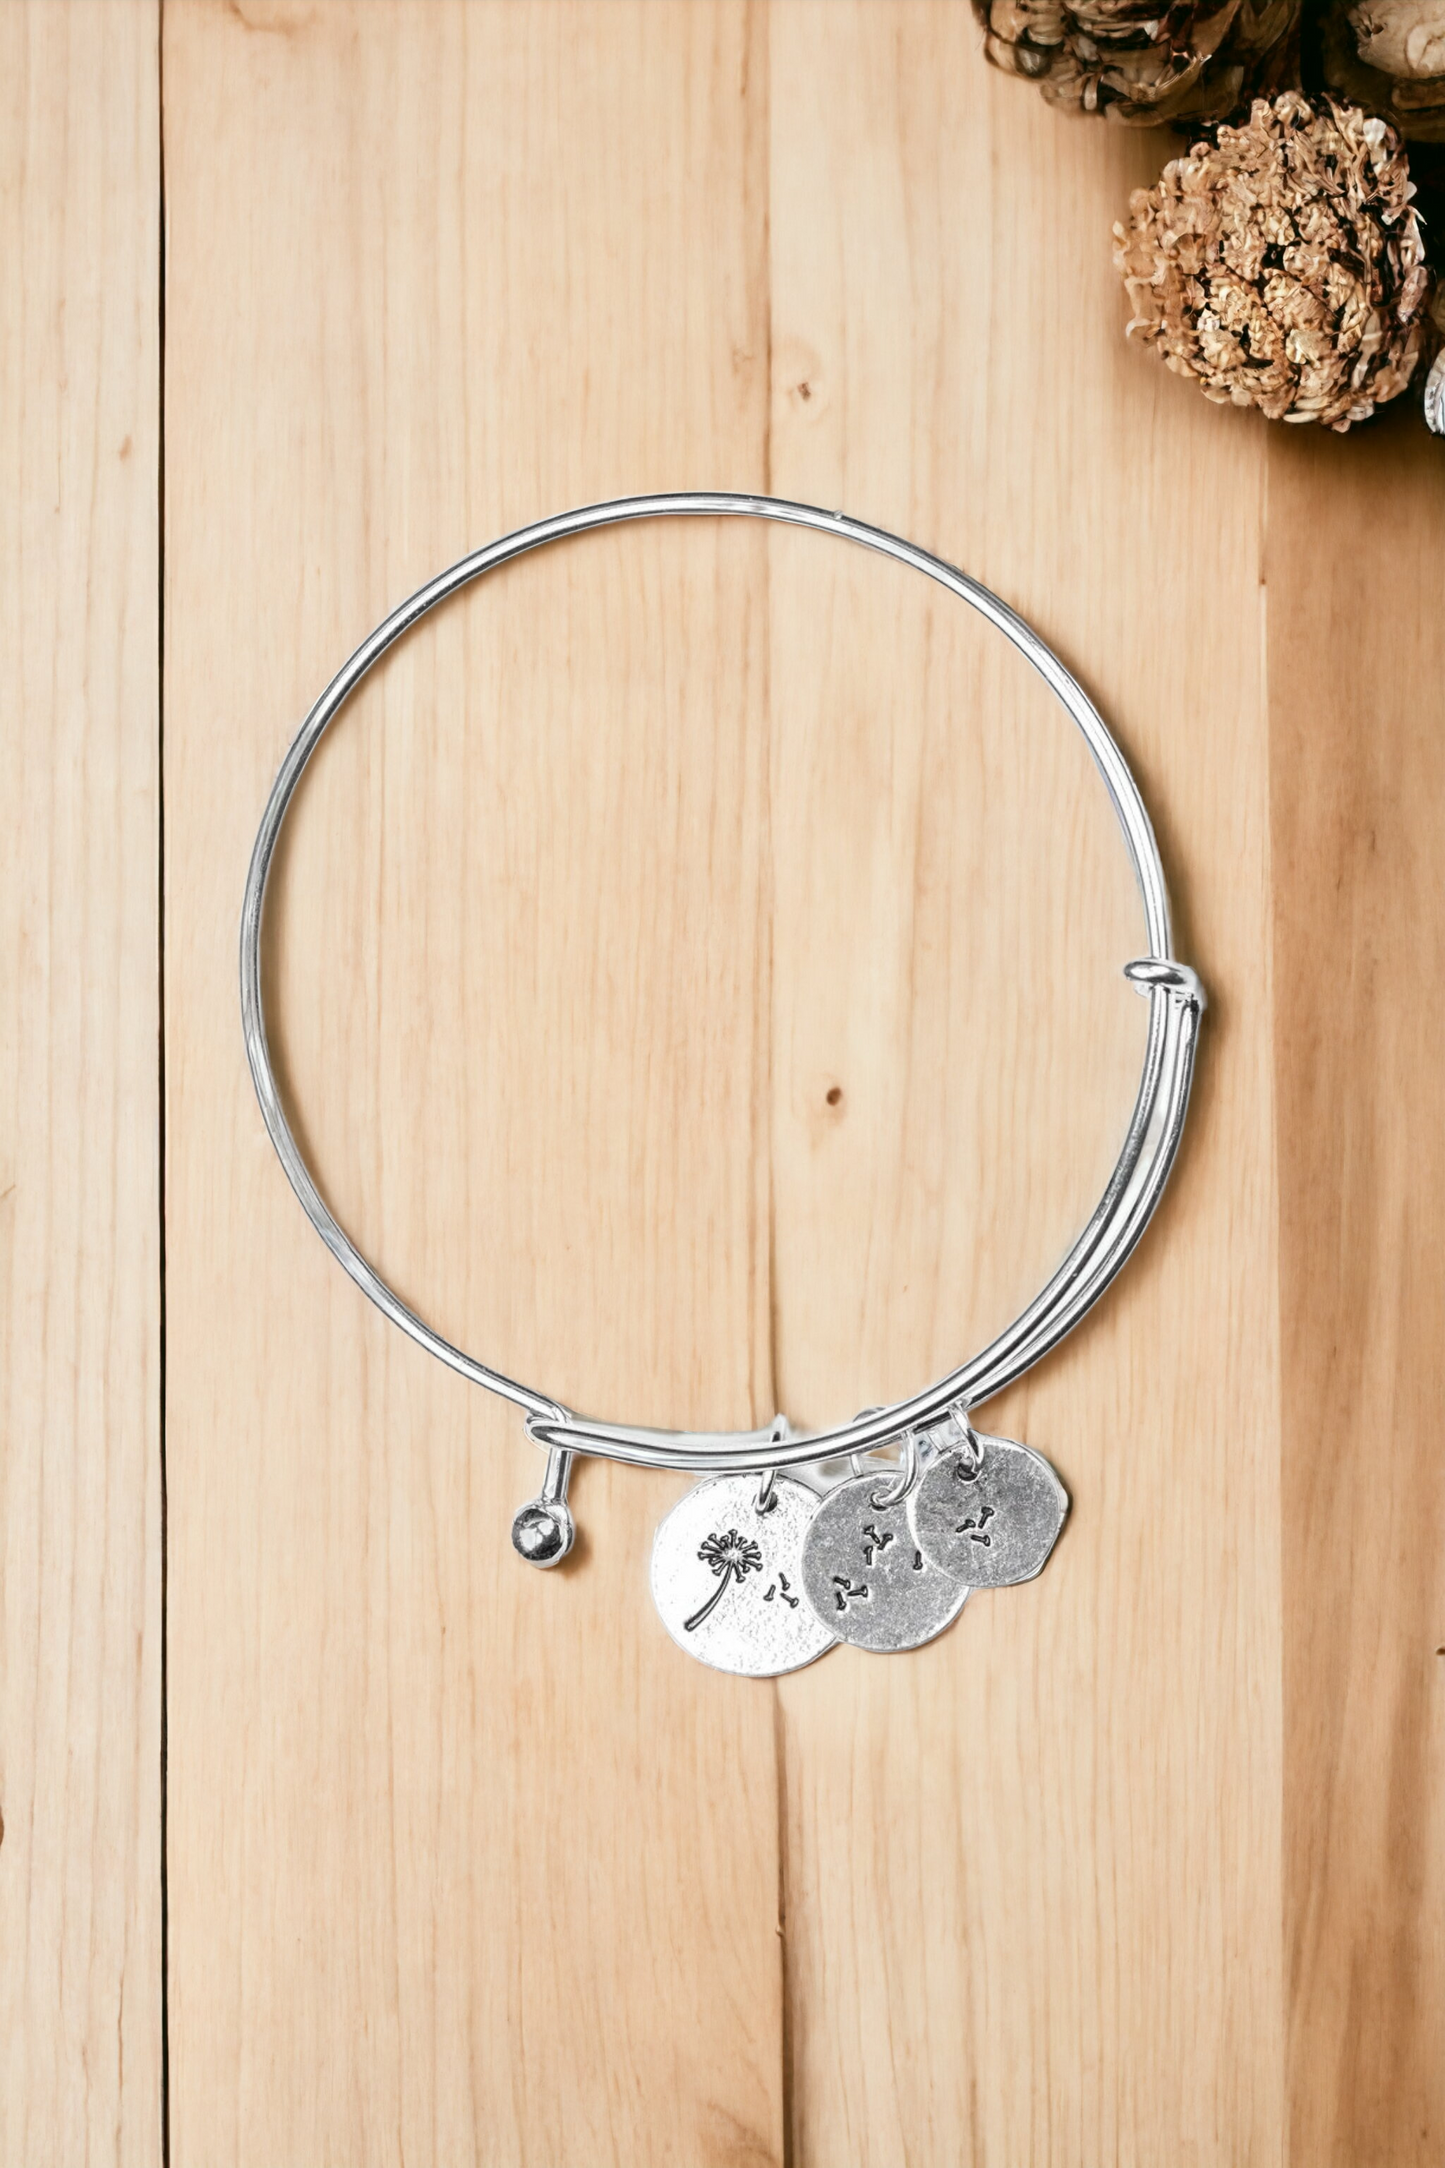 Dreamy Dandelions - Silver bracelet